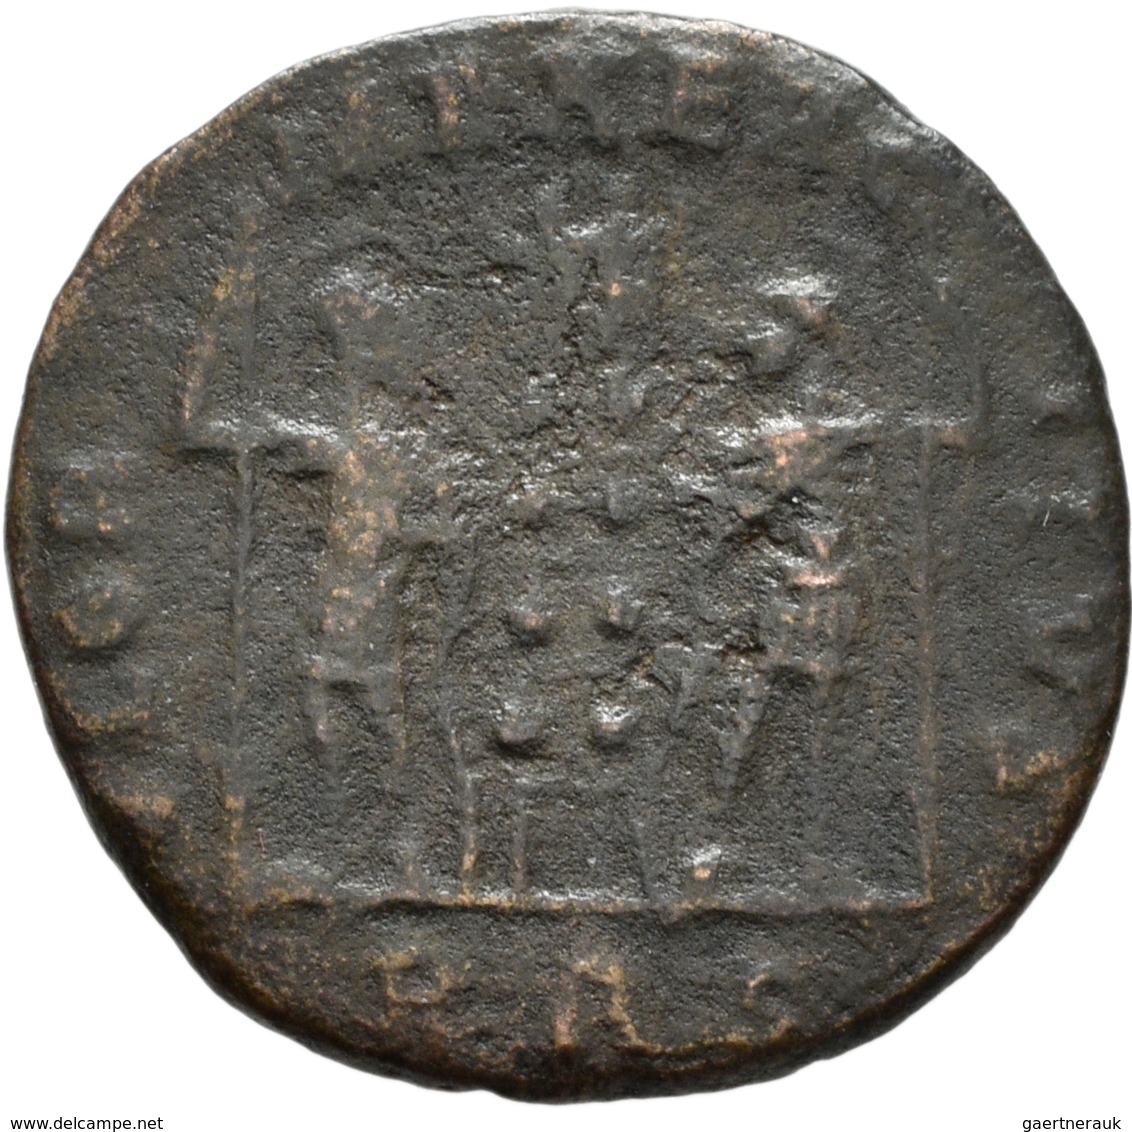 Antike: Lot von 48 antiker, meist römischer Kleinbronzemünzen aus der römischen Kaiserzeit, diverse